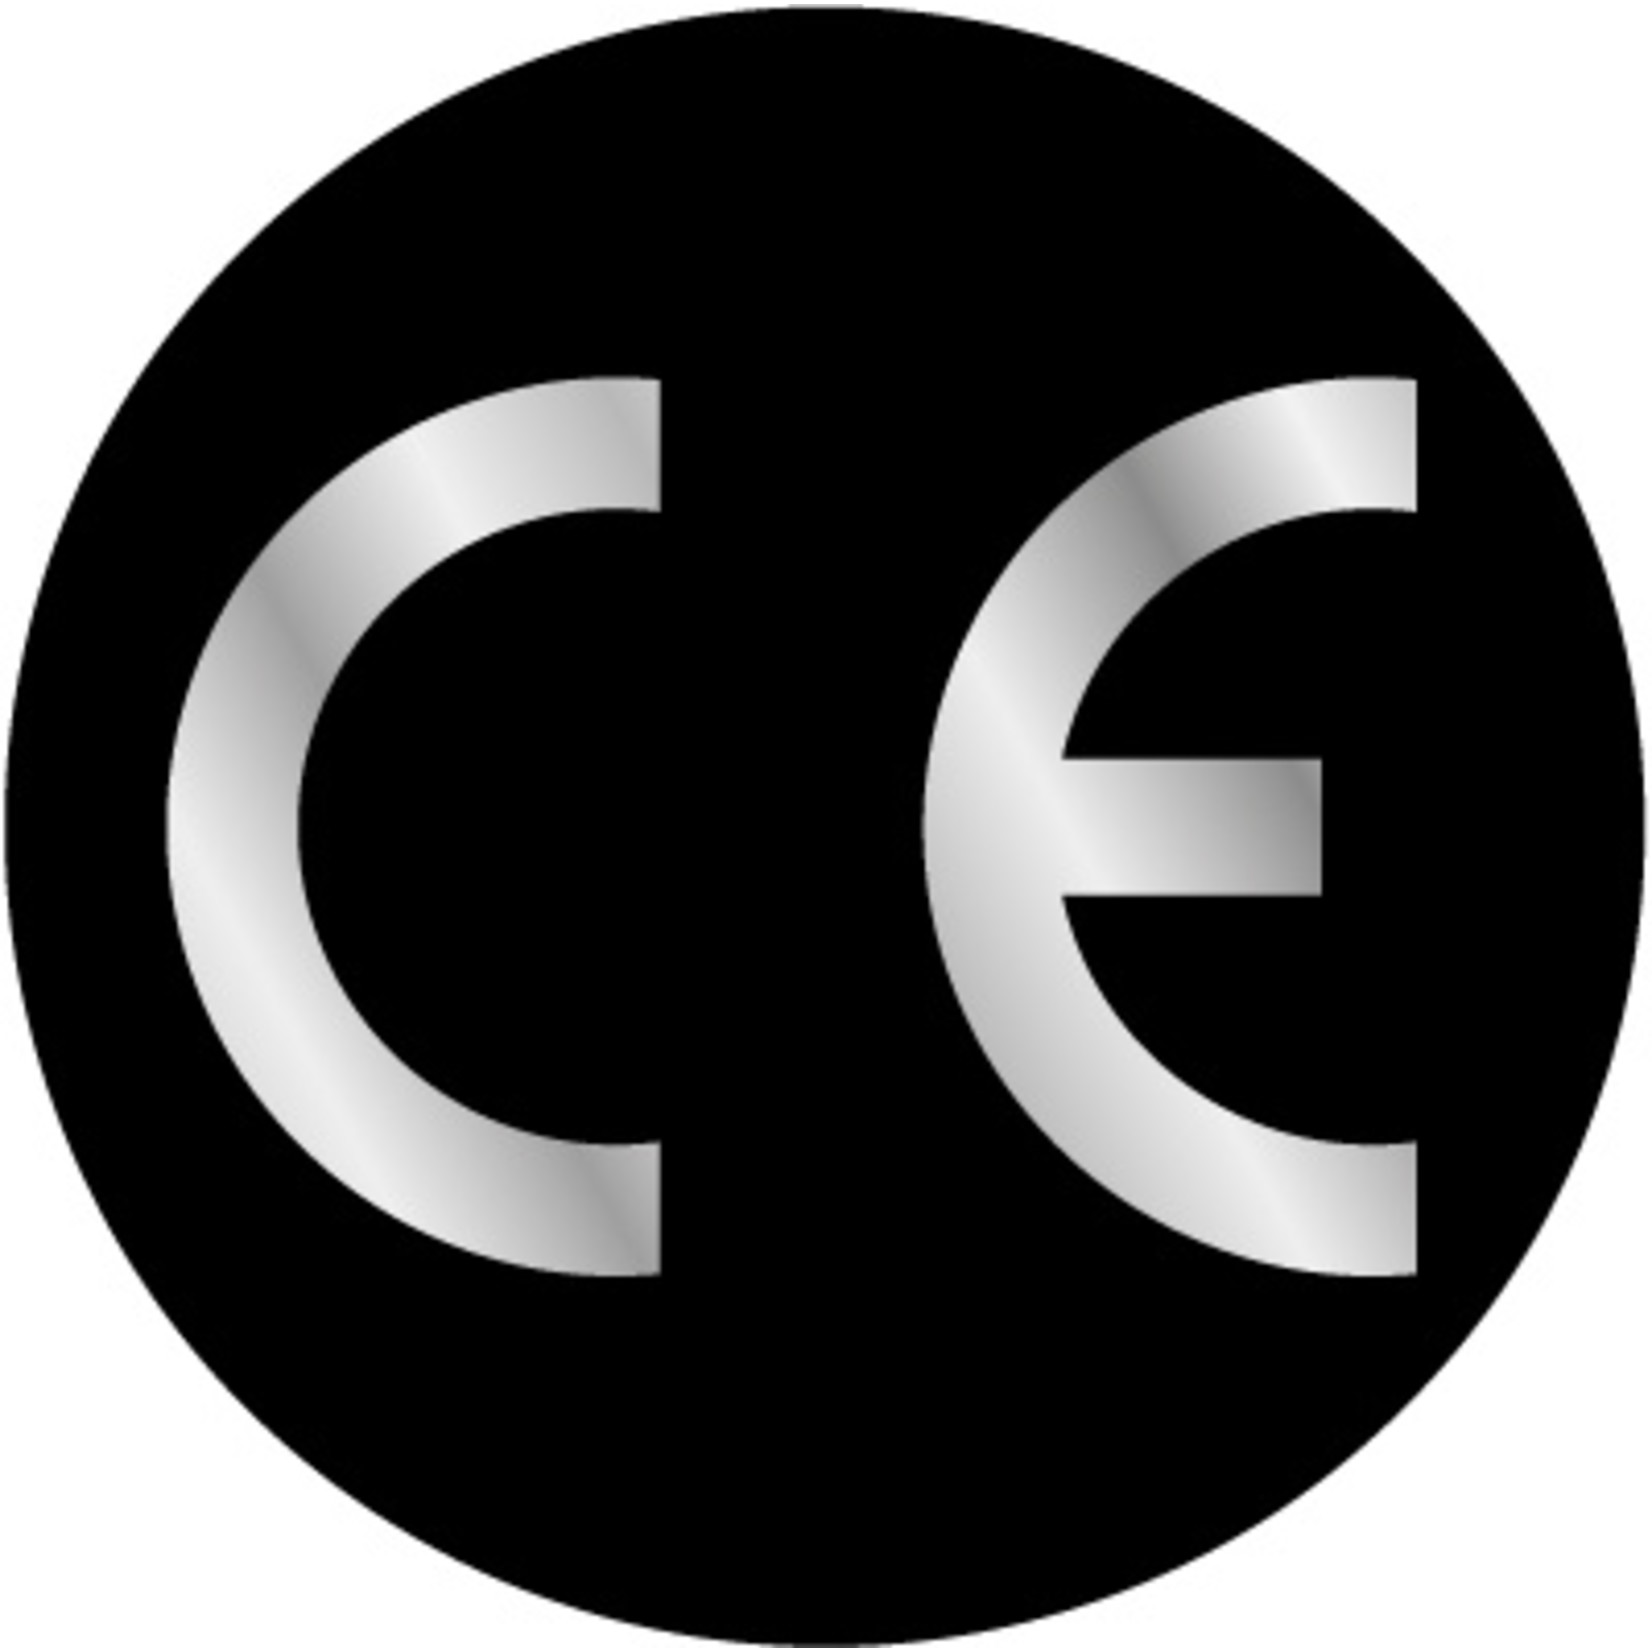 CE-sticker rond zwarte ondergrond, zilveren logo